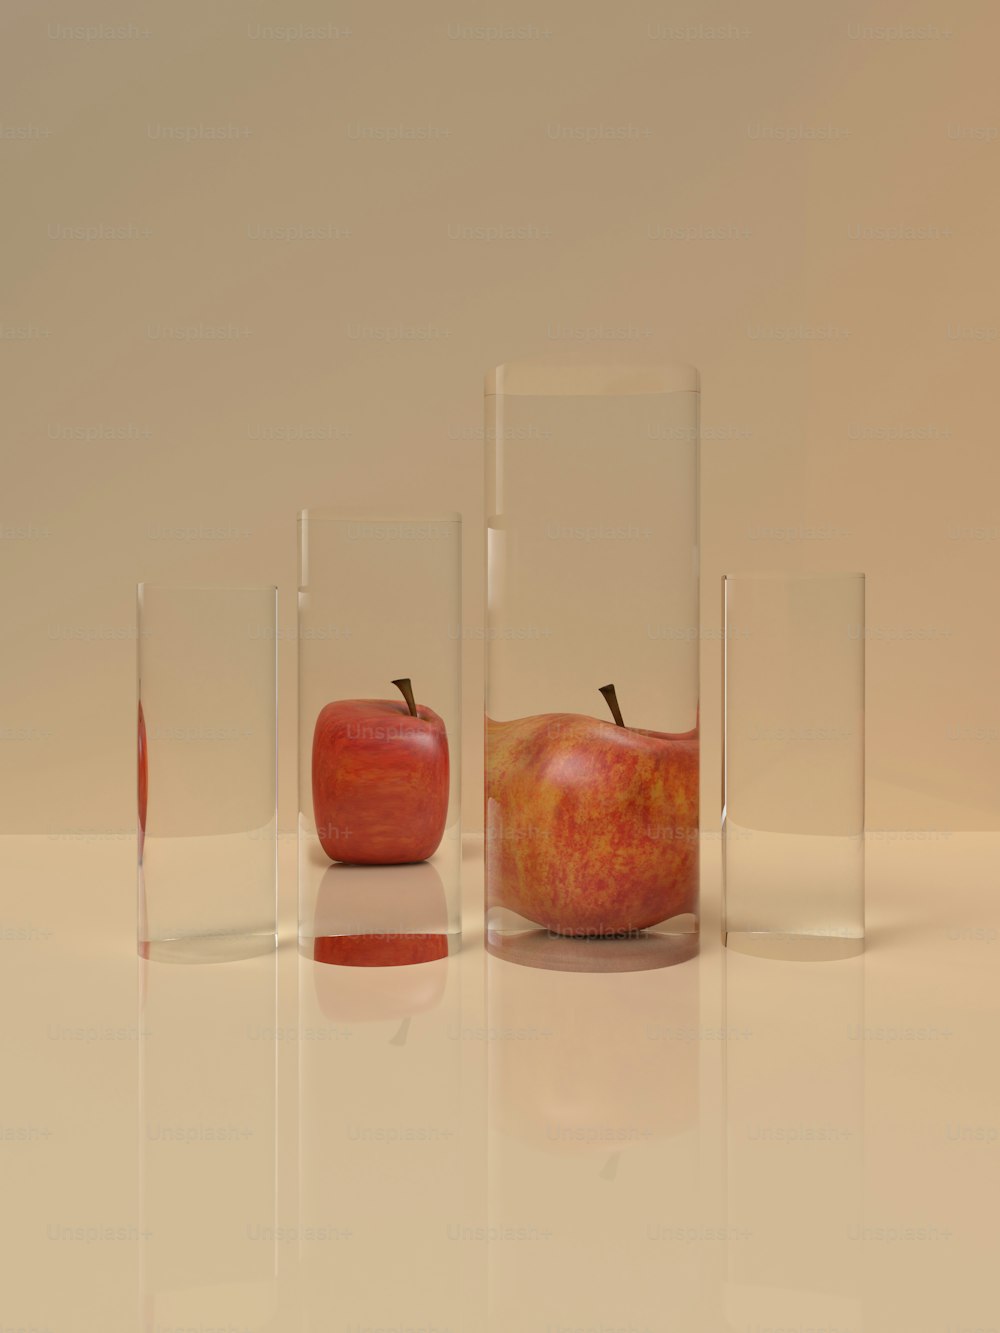 リンゴが入った3つのガラスの花瓶のグループ